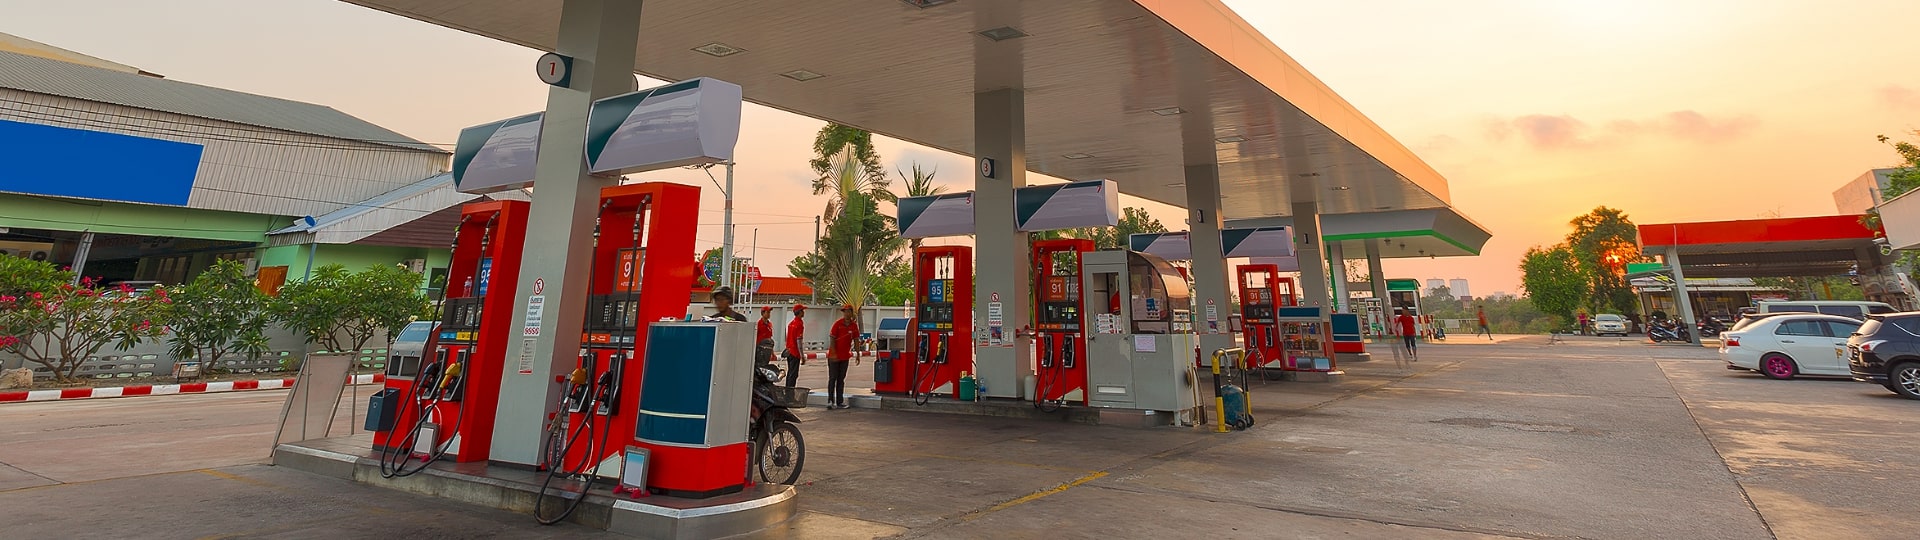 Ceny na čerpacích stanicích začaly klesat. Výraznějšímu snížení cen brání slabá koruna